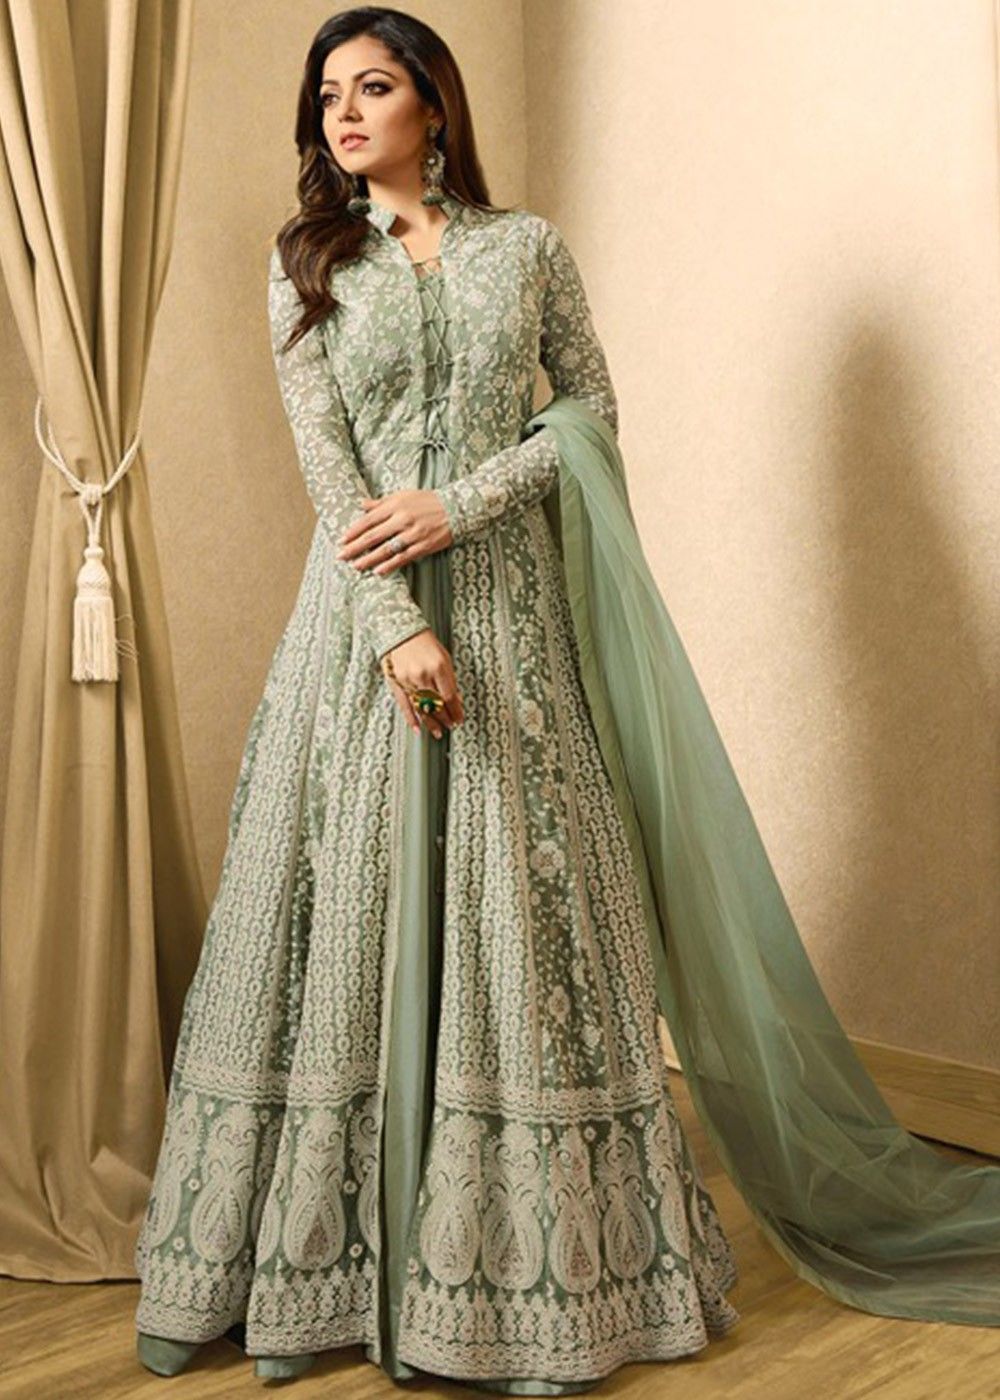 43 Velvet dresses ideas  velvet dress designs, pakistani dress design,  party wear dresses